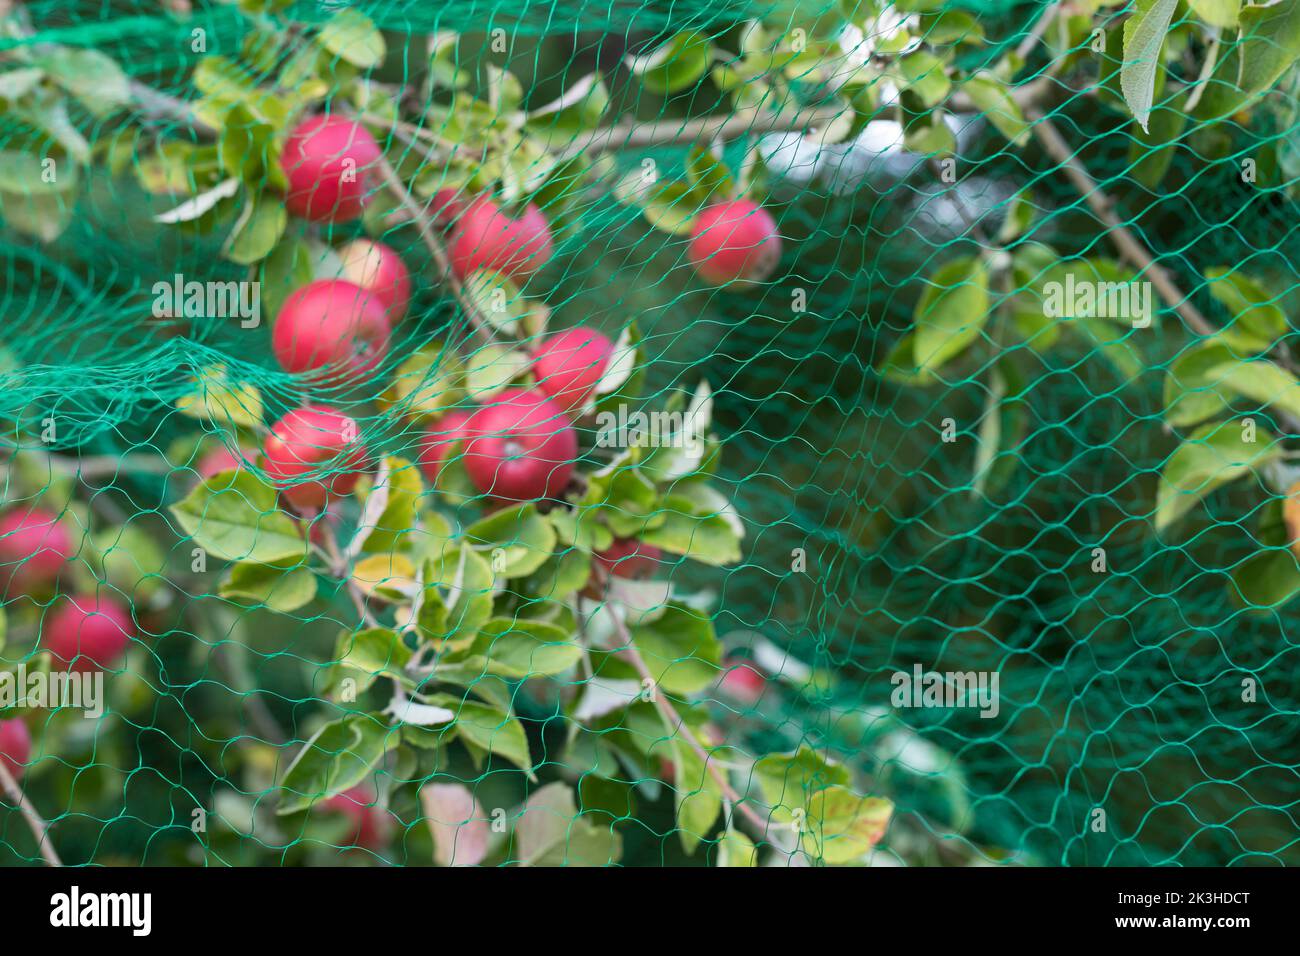 Vogelschutznetz, Baumnetz, Schutznetz, Fraßschutznetz, Baumschutznetz, Obstschutznetz, Vogelnetz, Netz über reifen Äpfeln soll Vögel und Eichhörnchen Stock Photo